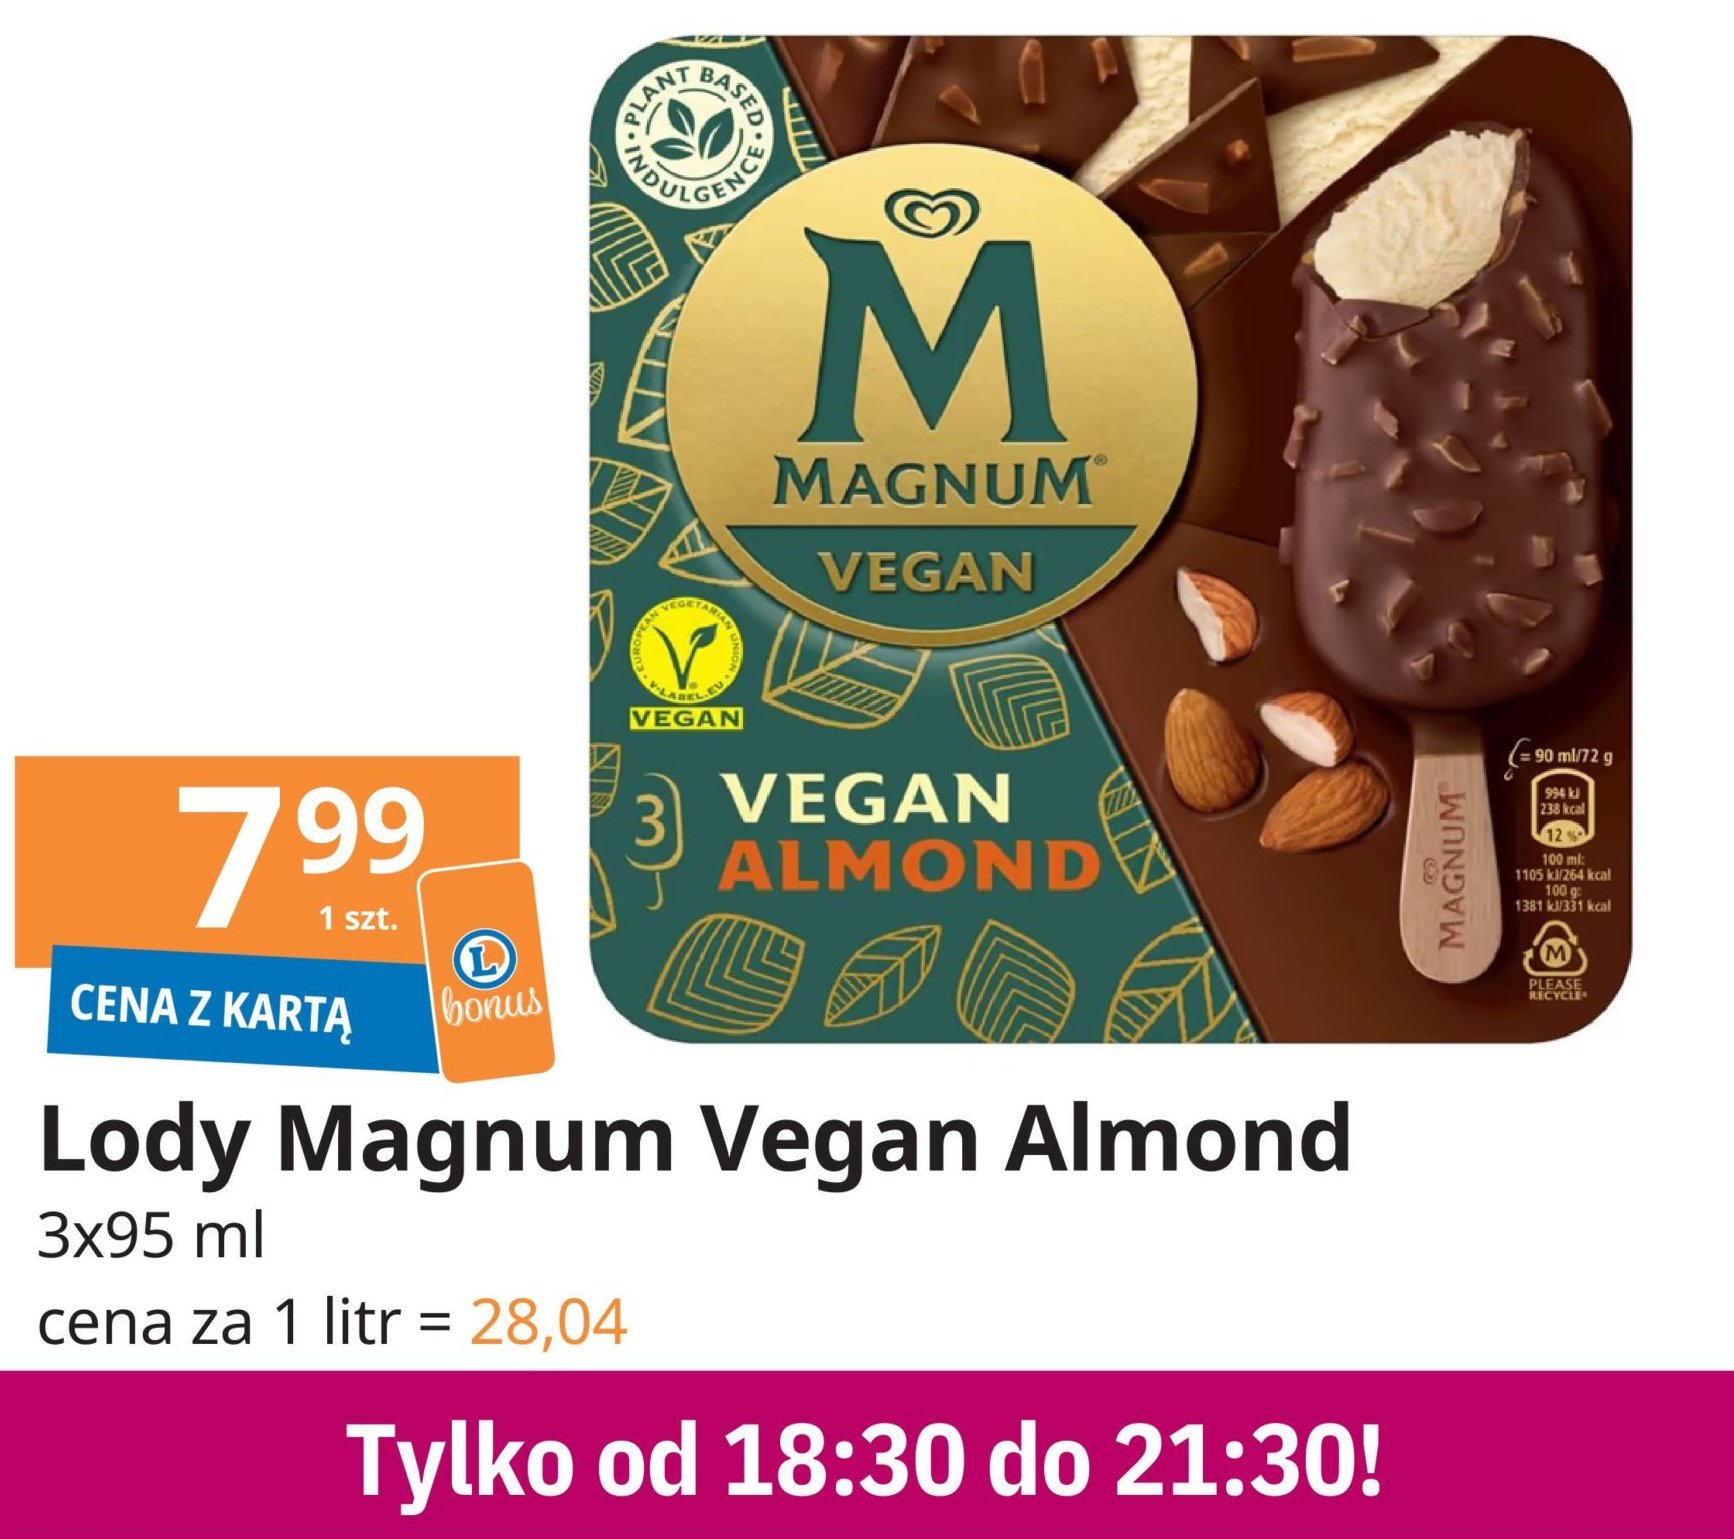 Lód almond Algida magnum vegan promocja